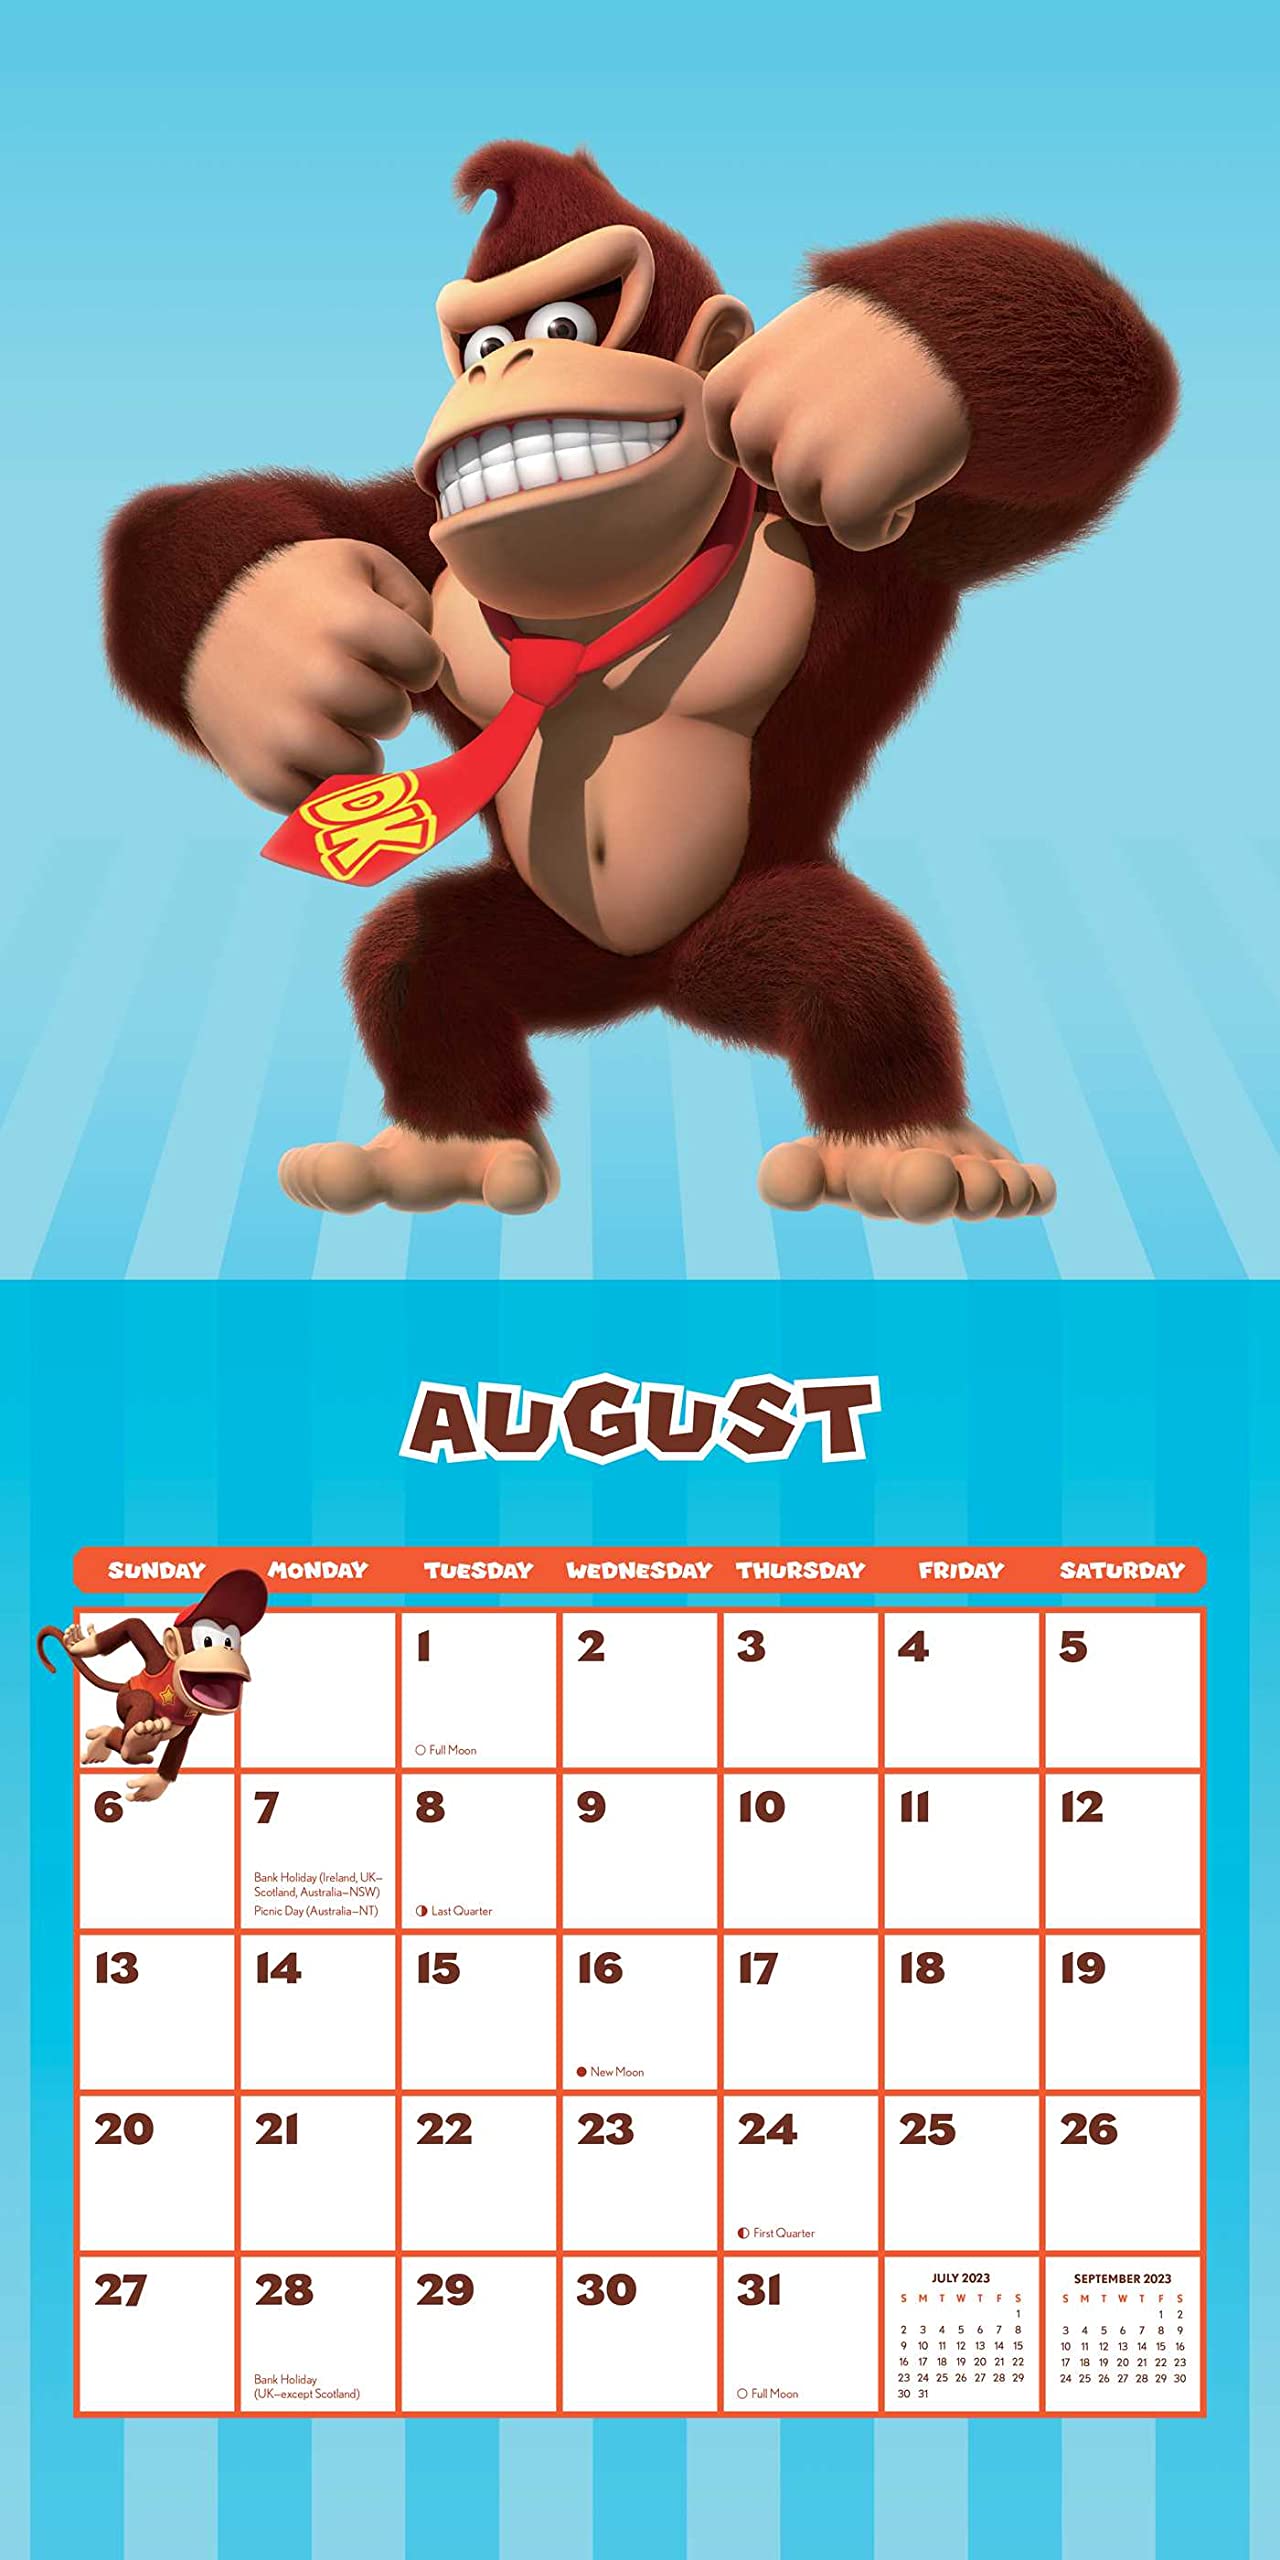 Super Mario 2023 Wall Calendar